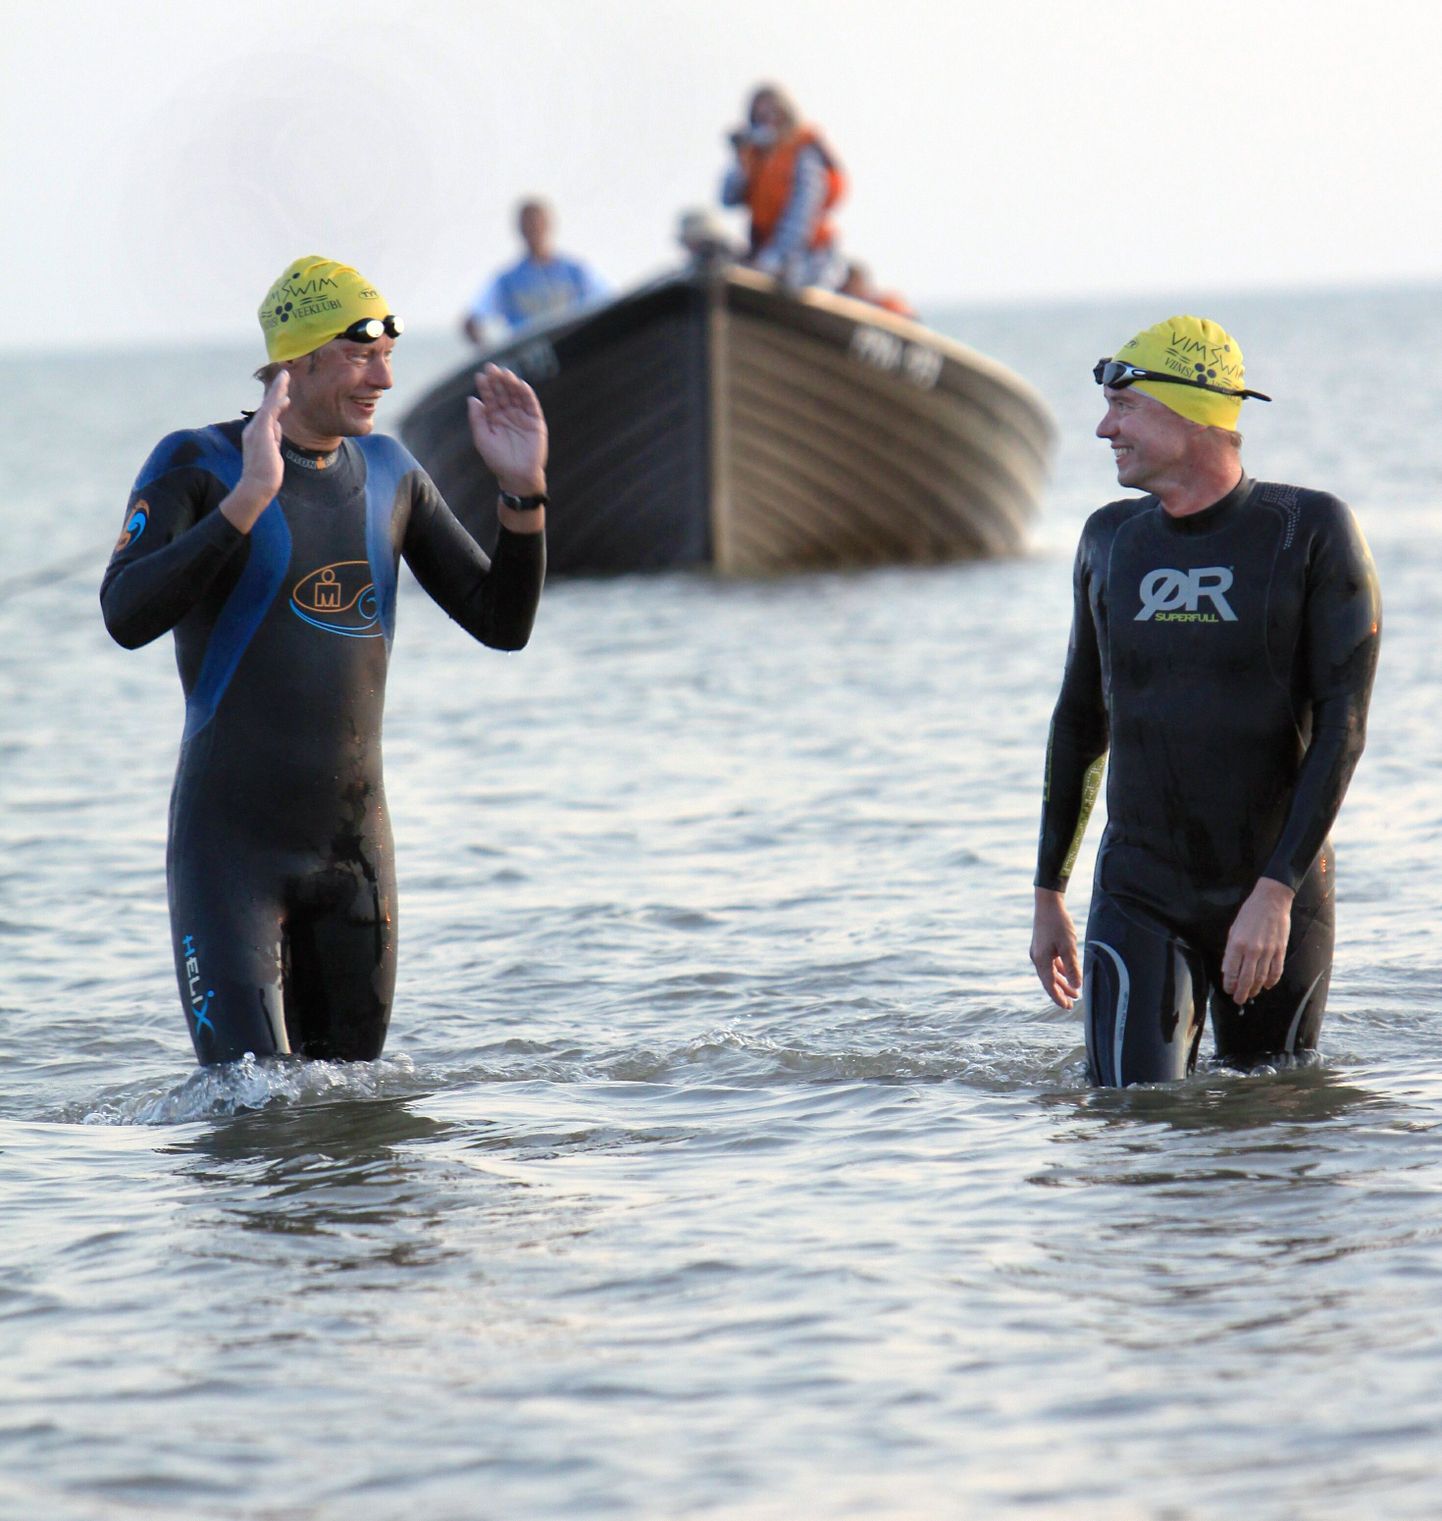 Bruno Nopponen (vasakul) ja Romet Tepper ujusid Kihnust Pärnusse ligi 16 tundi. Kolmandana Kihnust teele asunud Henri Kaarma ronis paati pärast 14 tunnist ujumist.